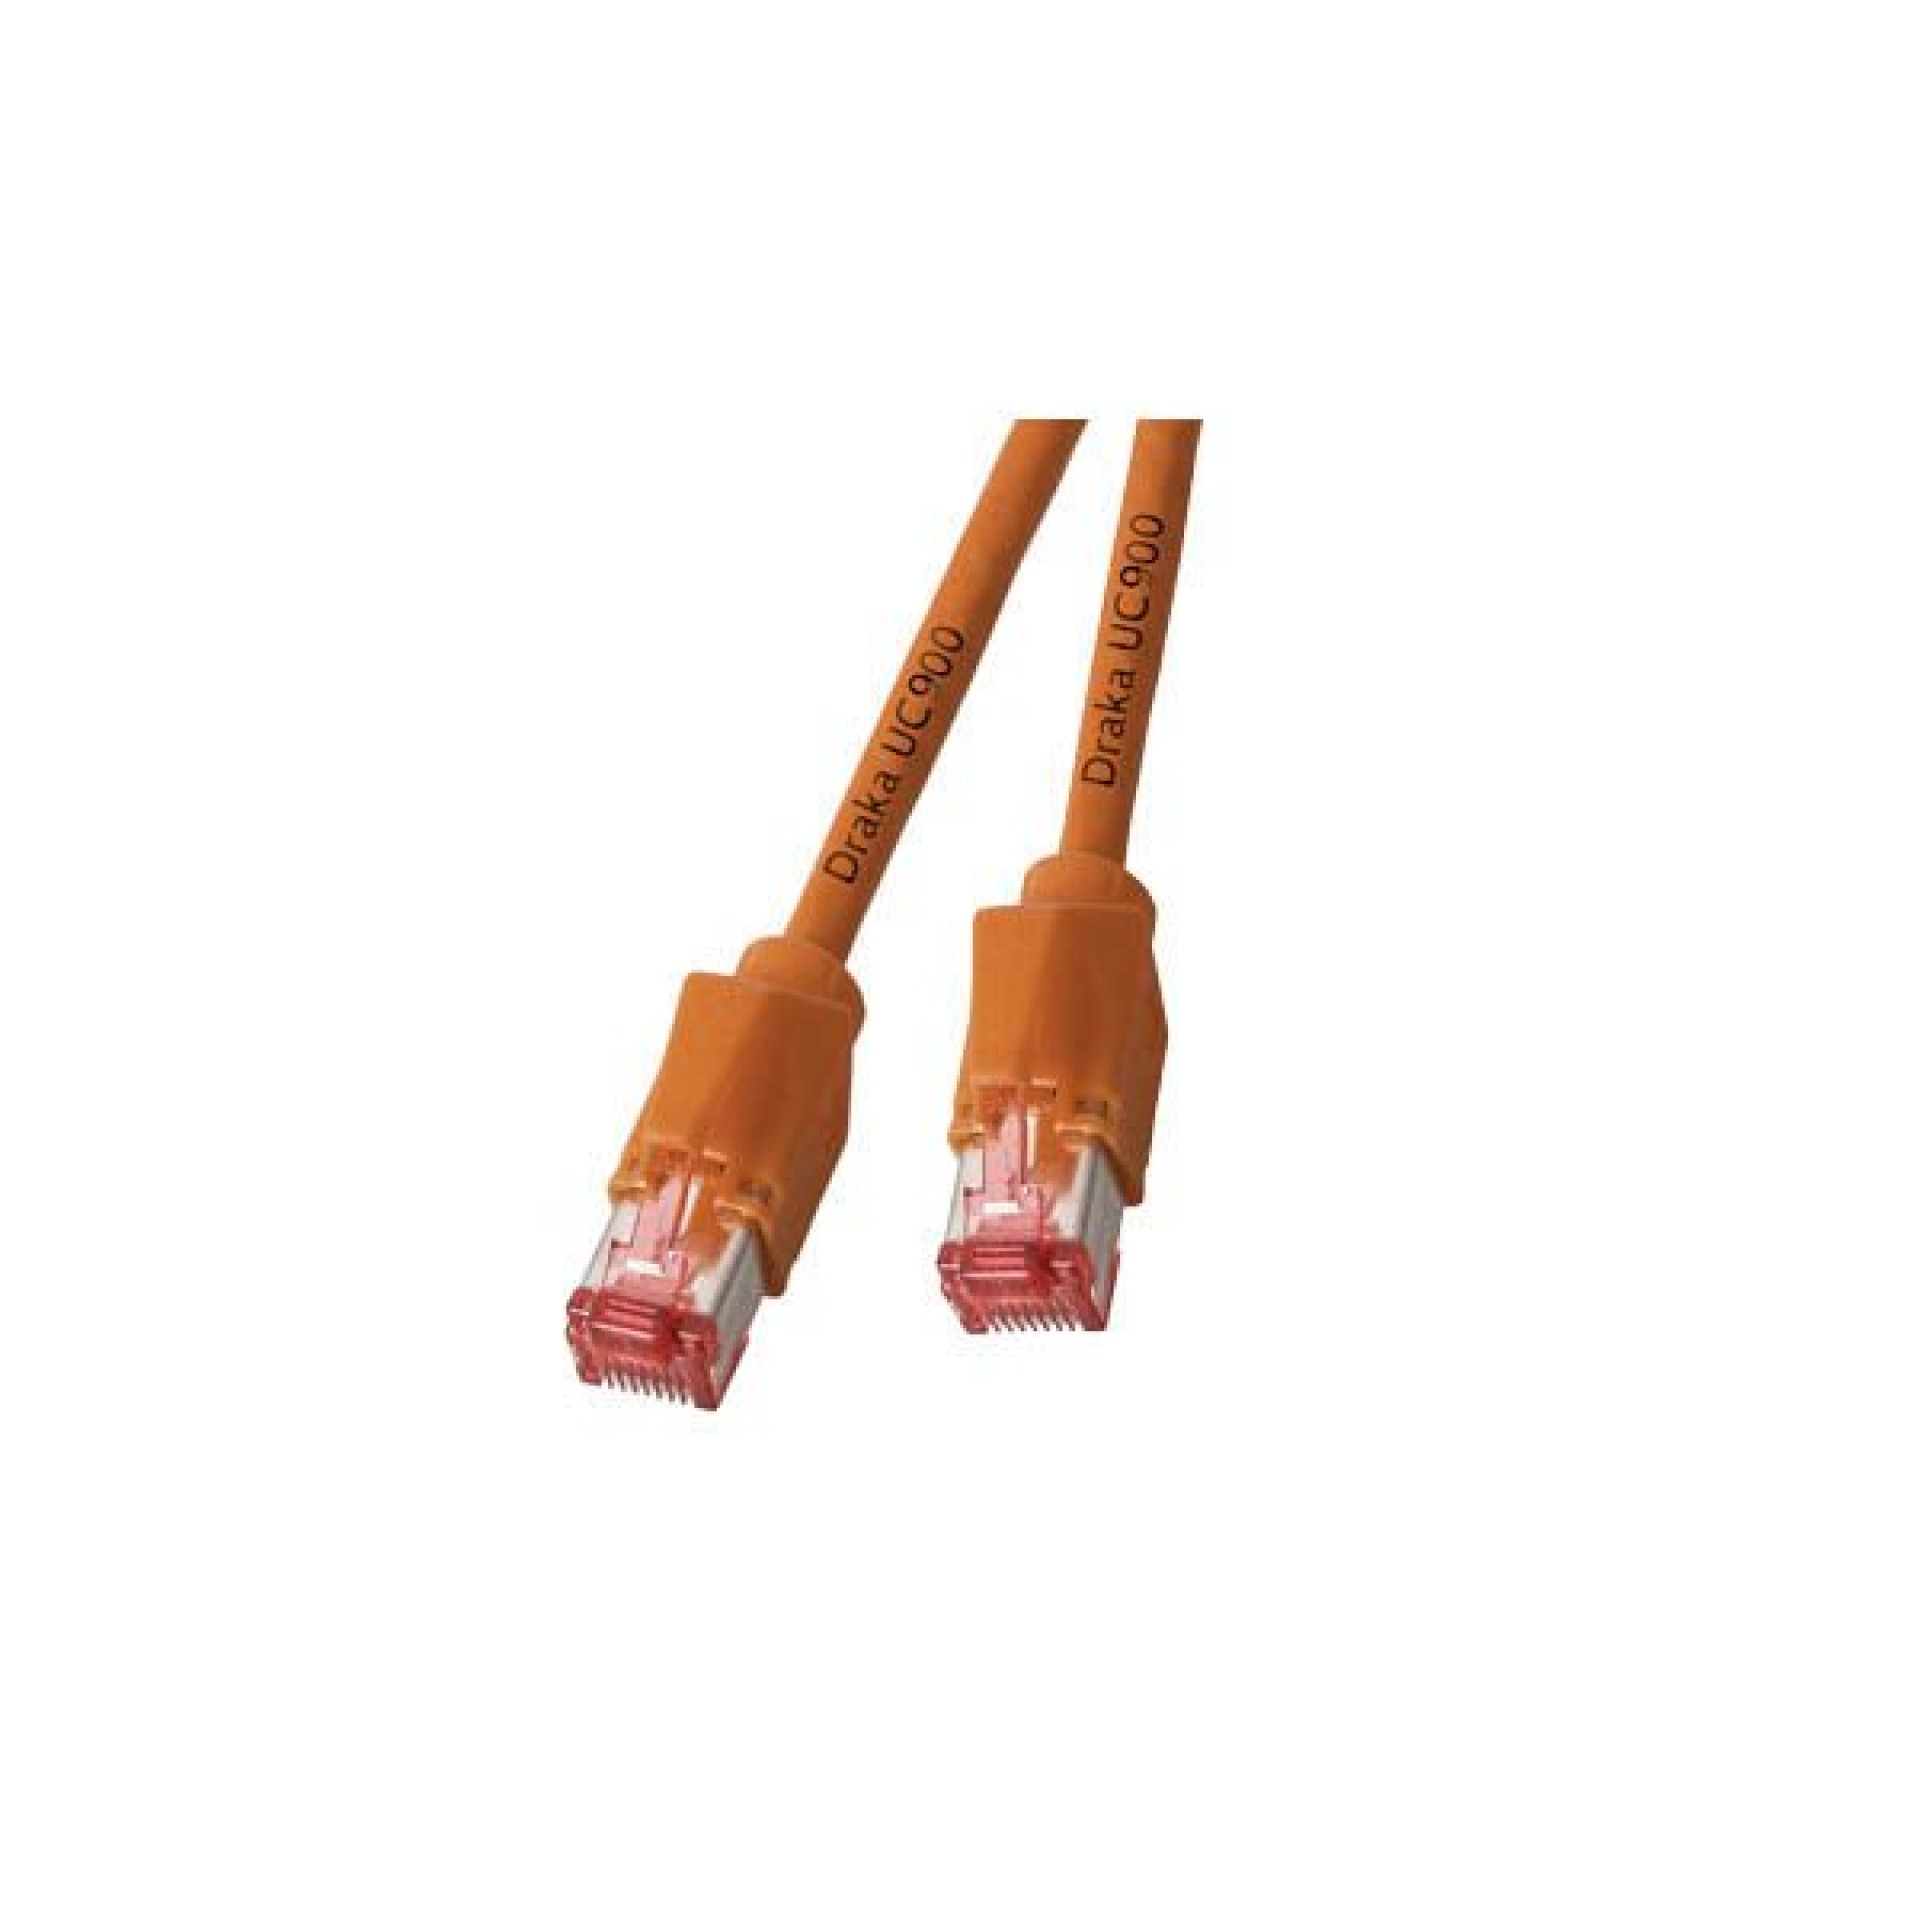 RJ45 Patch cable S/FTP, Cat.6A, TM21, Dätwyler 7702, 1,5m, orange